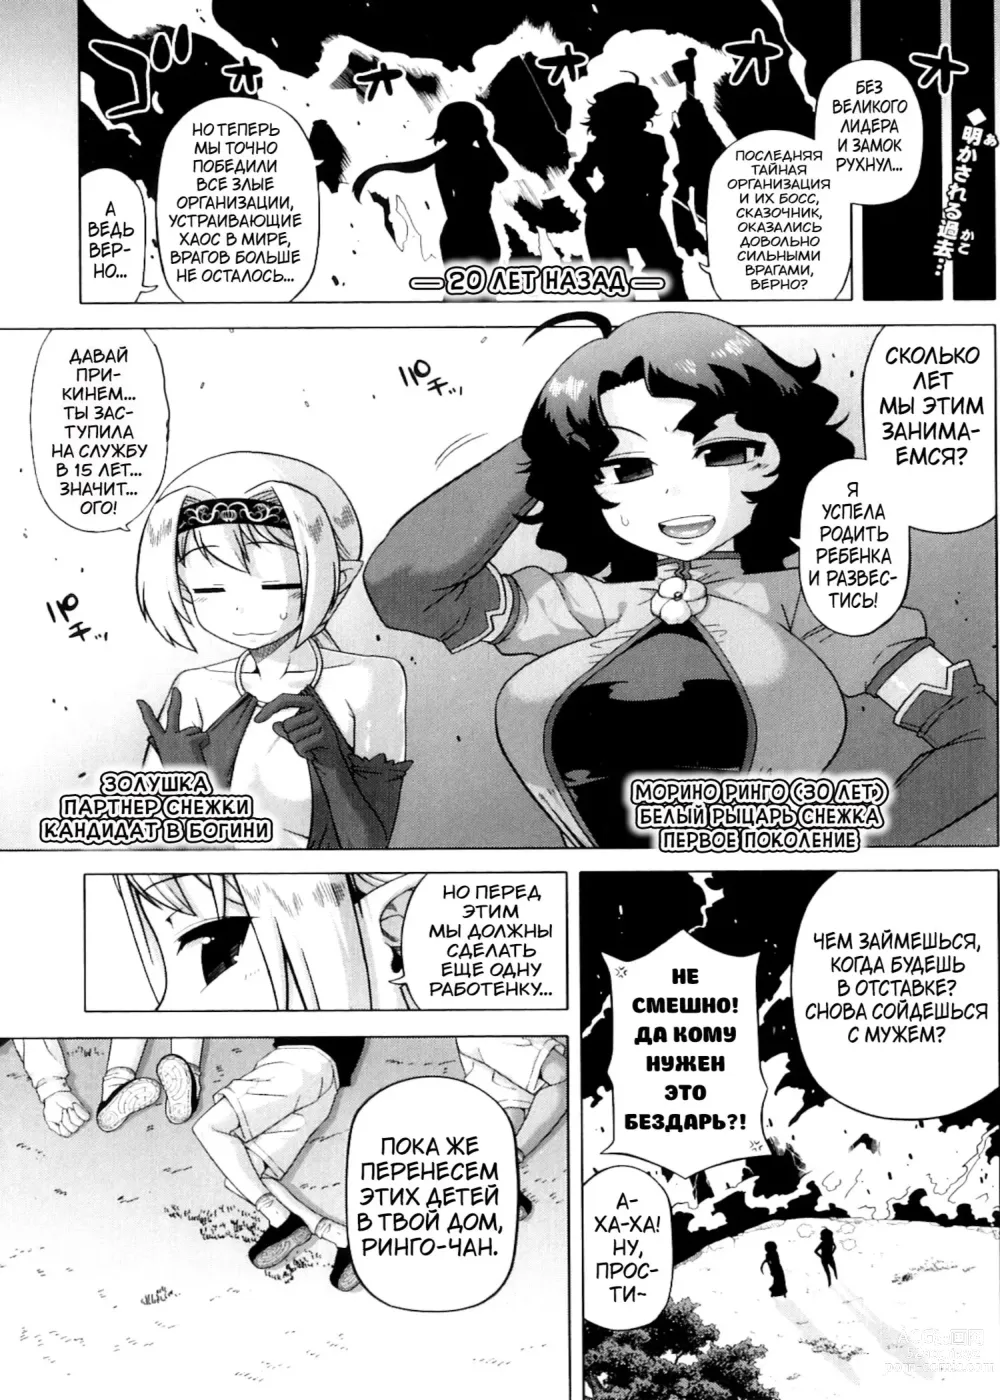 Page 185 of manga Snow Knight Whitey